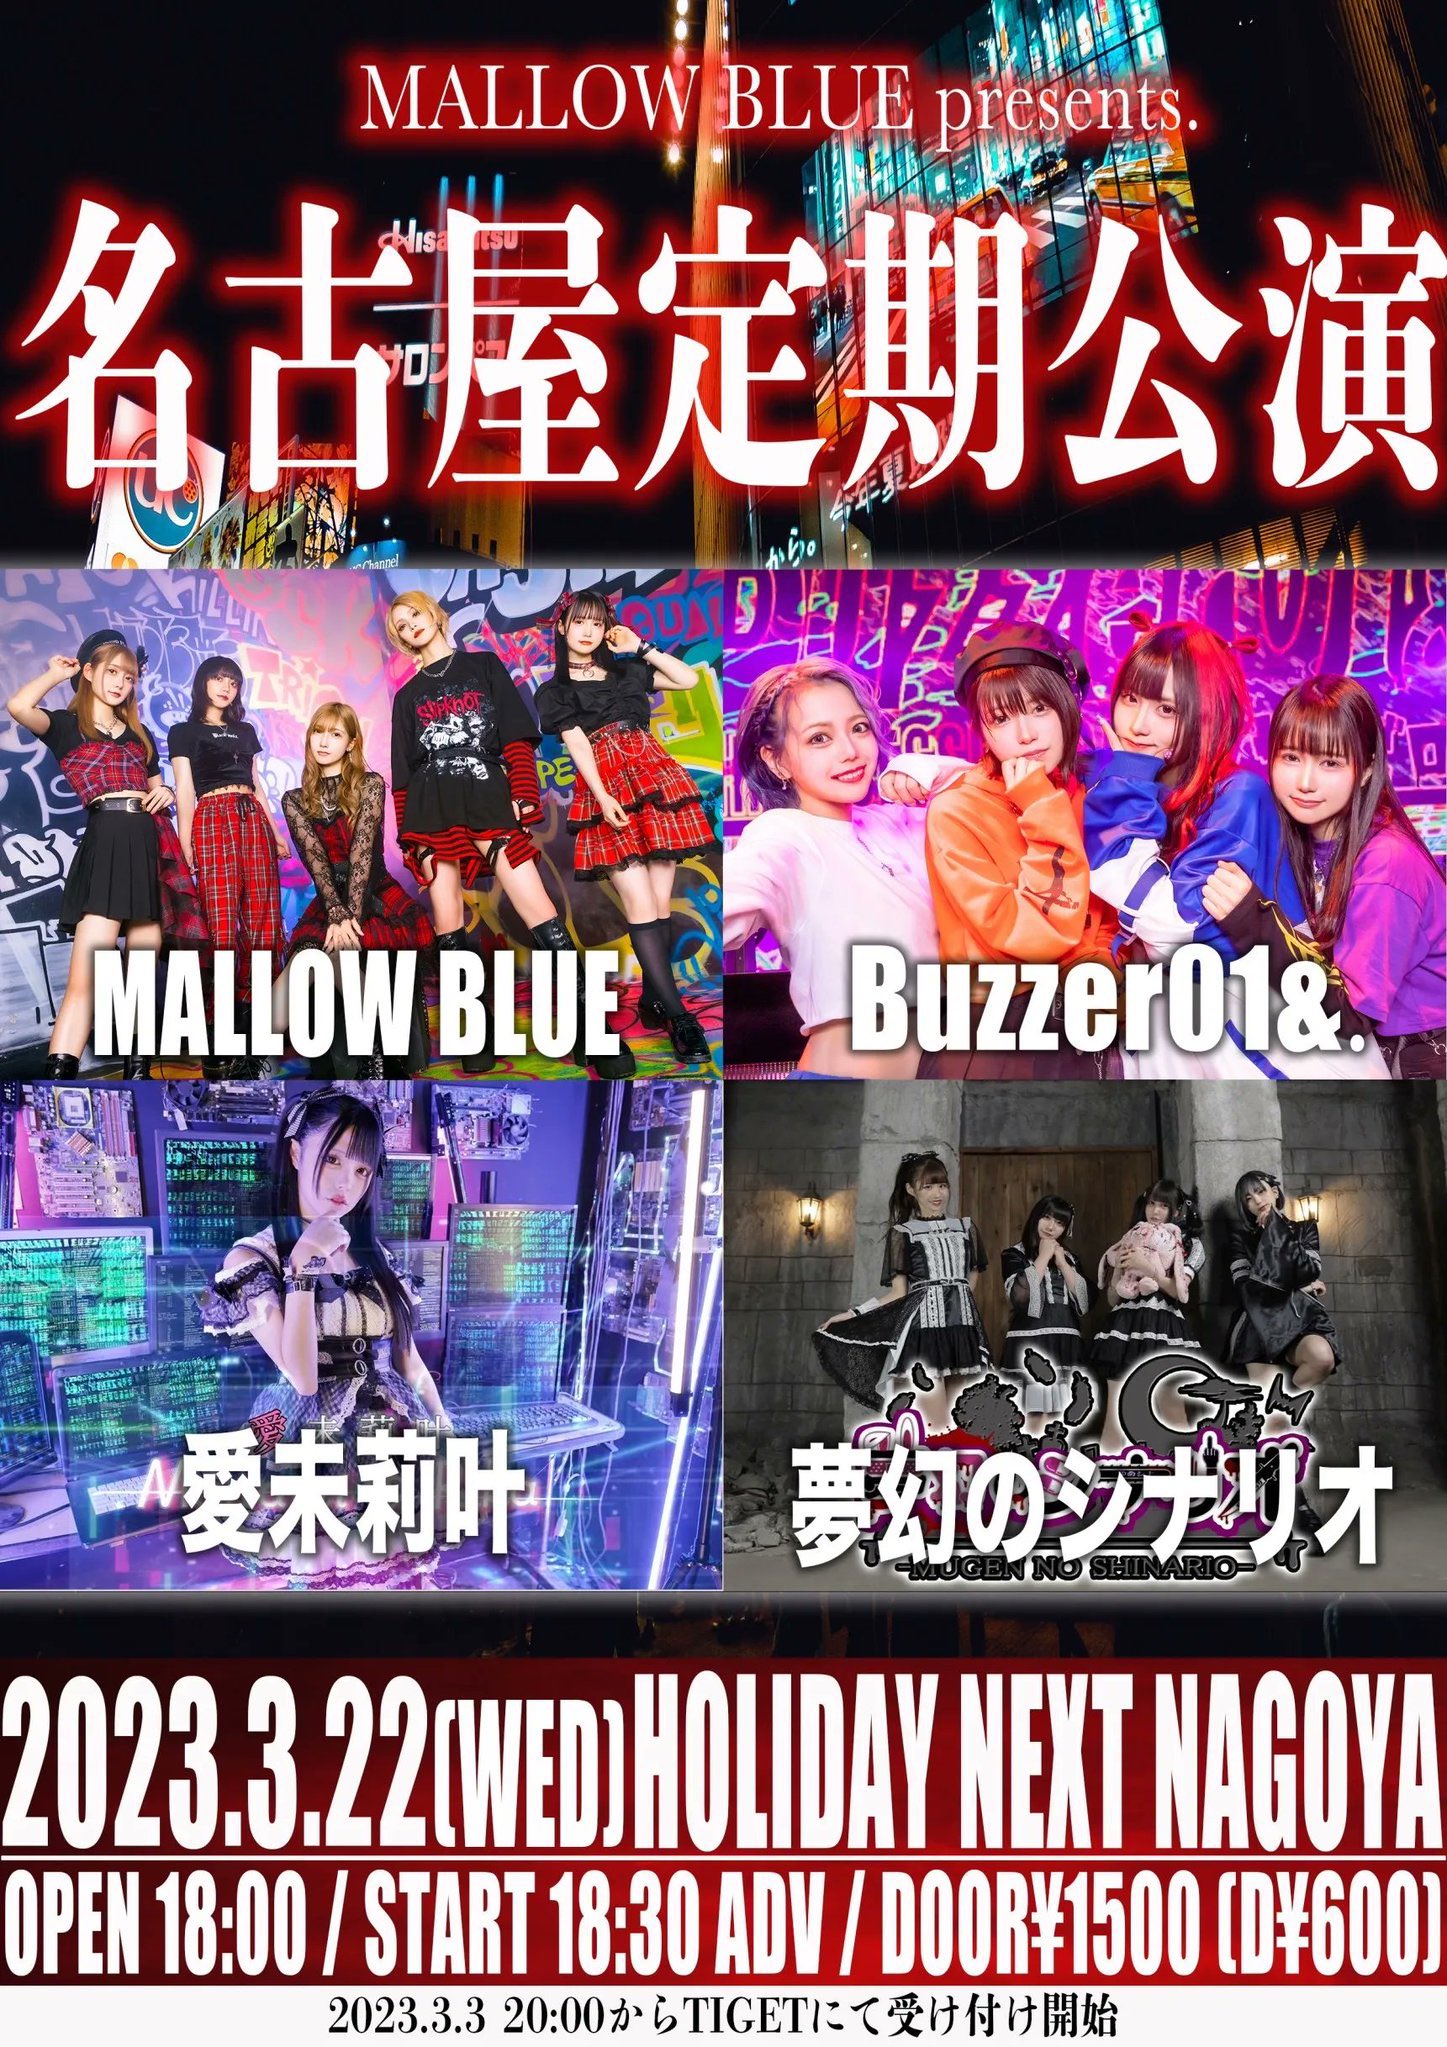 星井あおサポート出演公演(Buzzer01&. ＆ MALLOW BLUE)『MALLOW BLUE 名古屋定期公演』